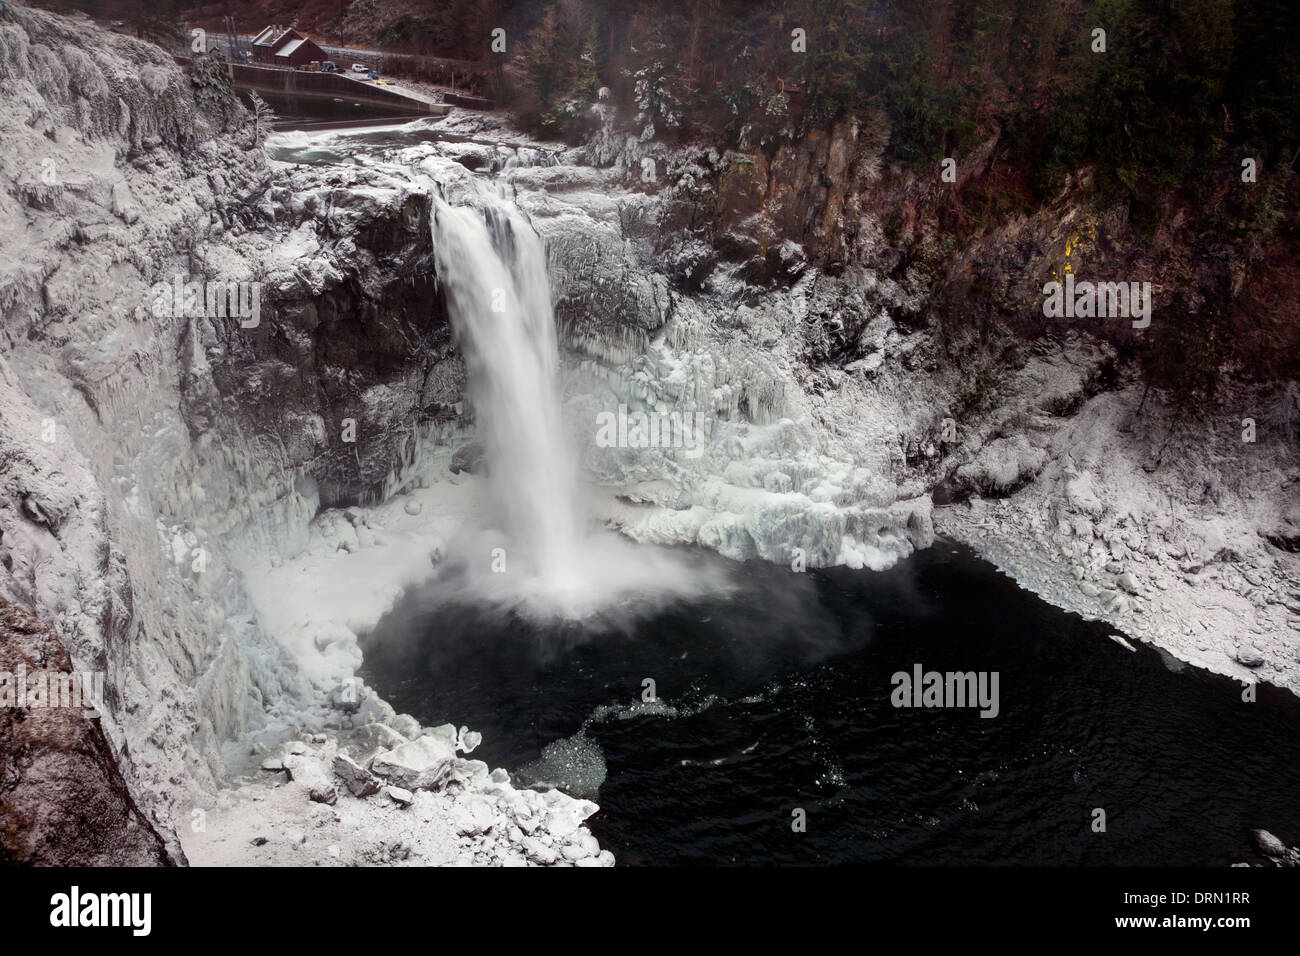 WASHINGTON - Spray auf den steilen Berghängen rund um Snoqualmie Falls am Snoqualmie River eingefroren. Stockfoto